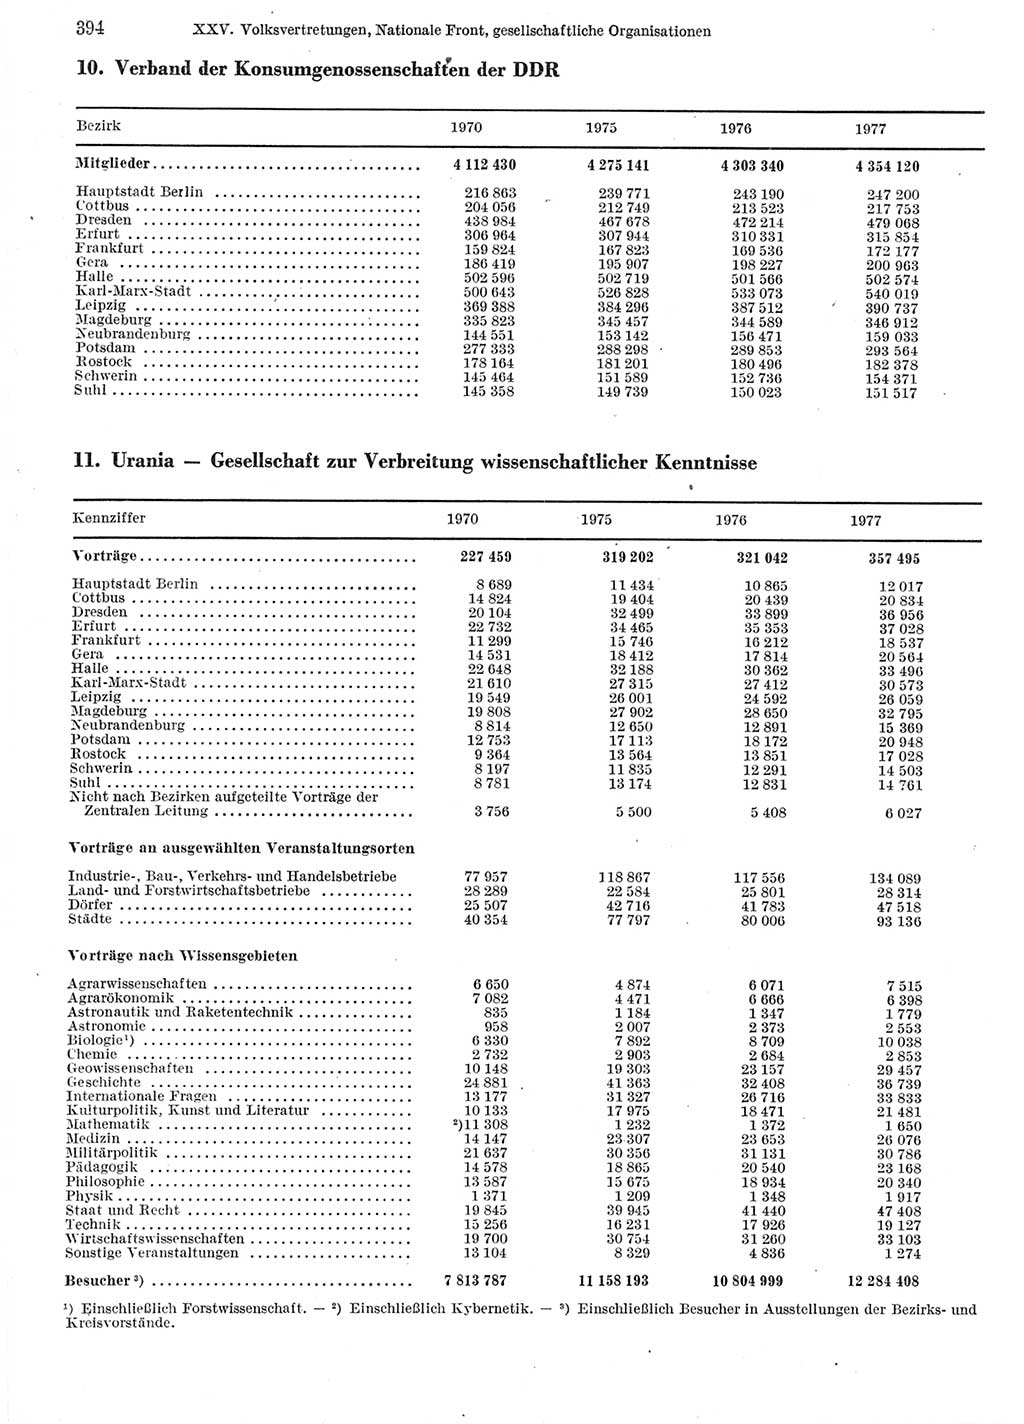 Statistisches Jahrbuch der Deutschen Demokratischen Republik (DDR) 1978, Seite 394 (Stat. Jb. DDR 1978, S. 394)